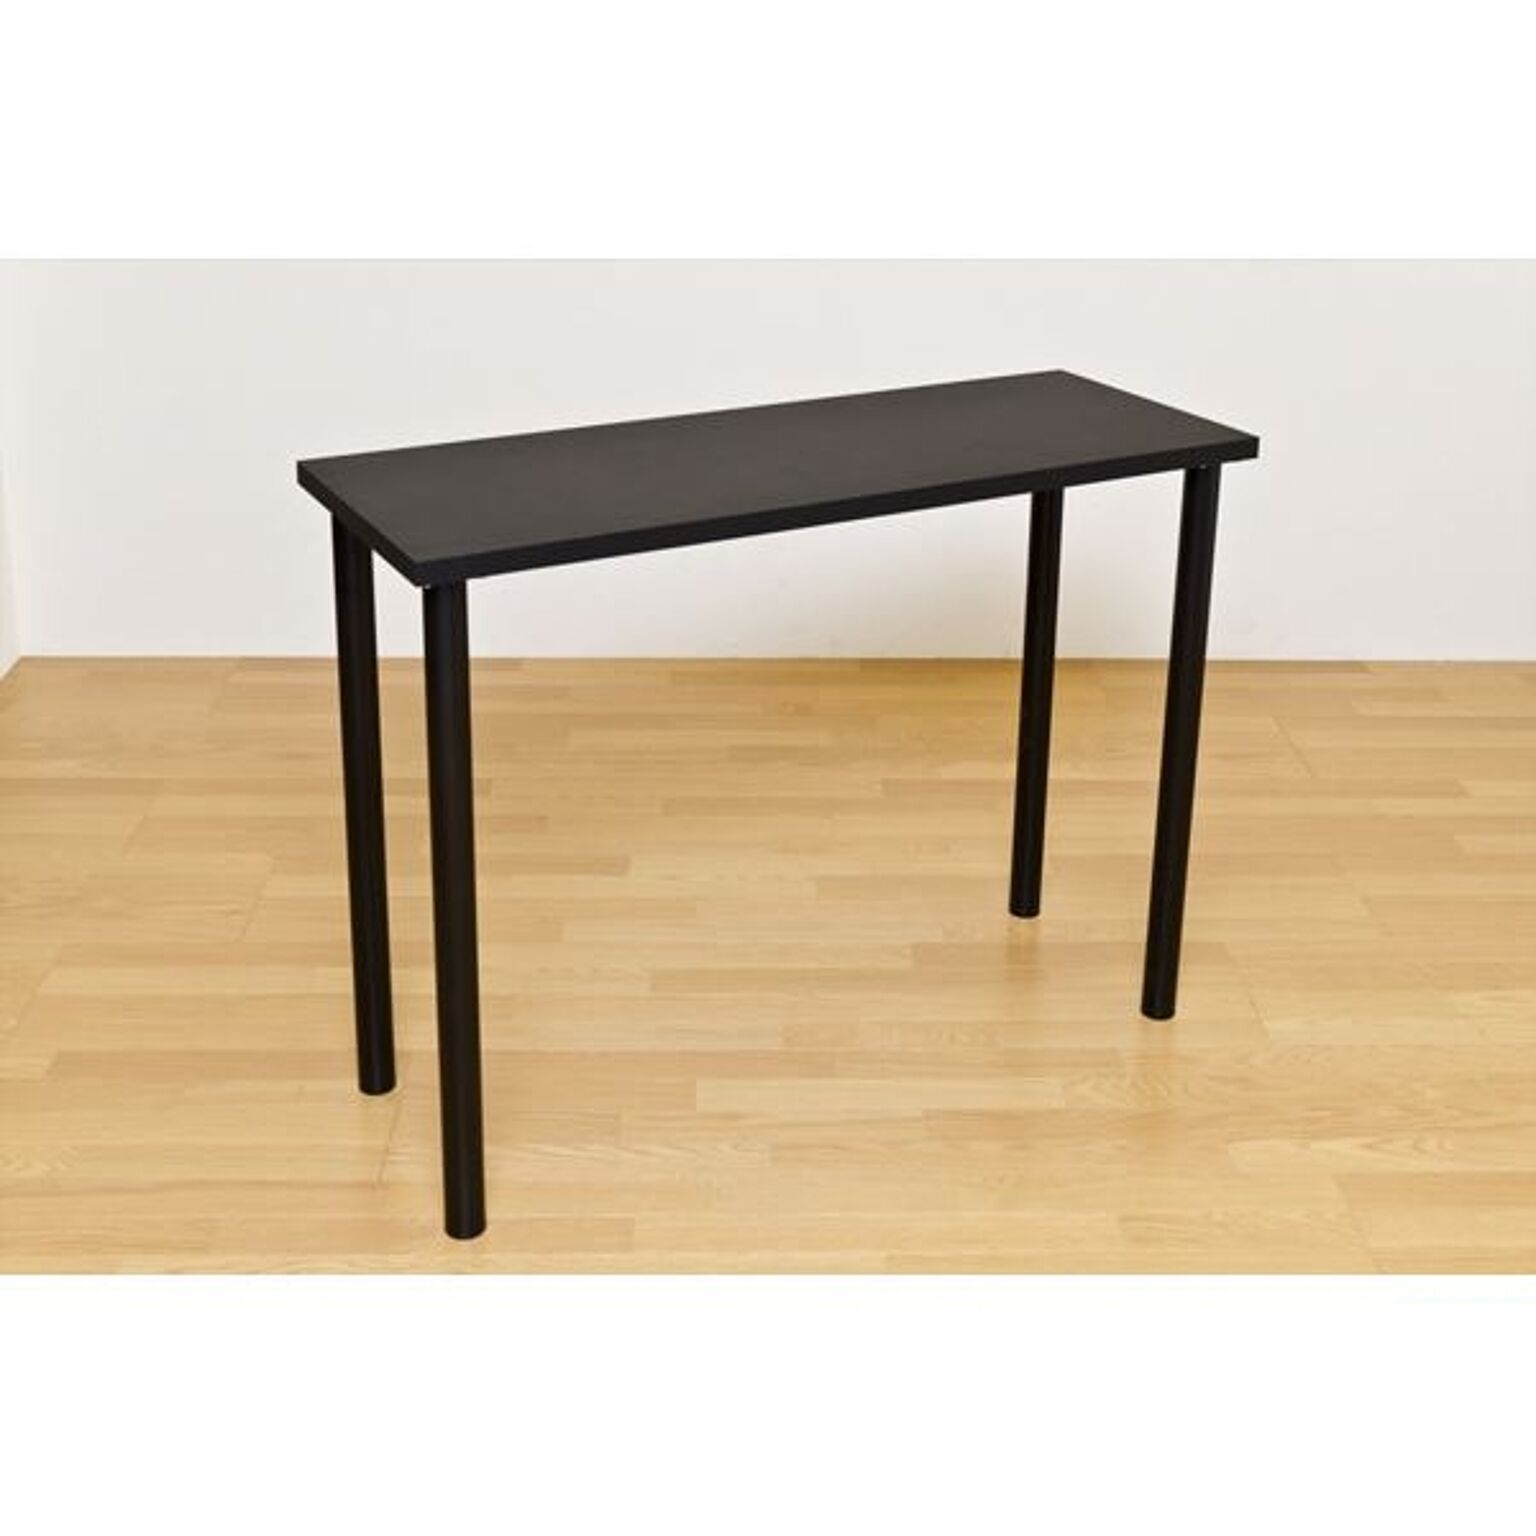 フリーバーテーブル/ハイテーブル 120cm×45cm ブラック(黒) 天板厚約3cm